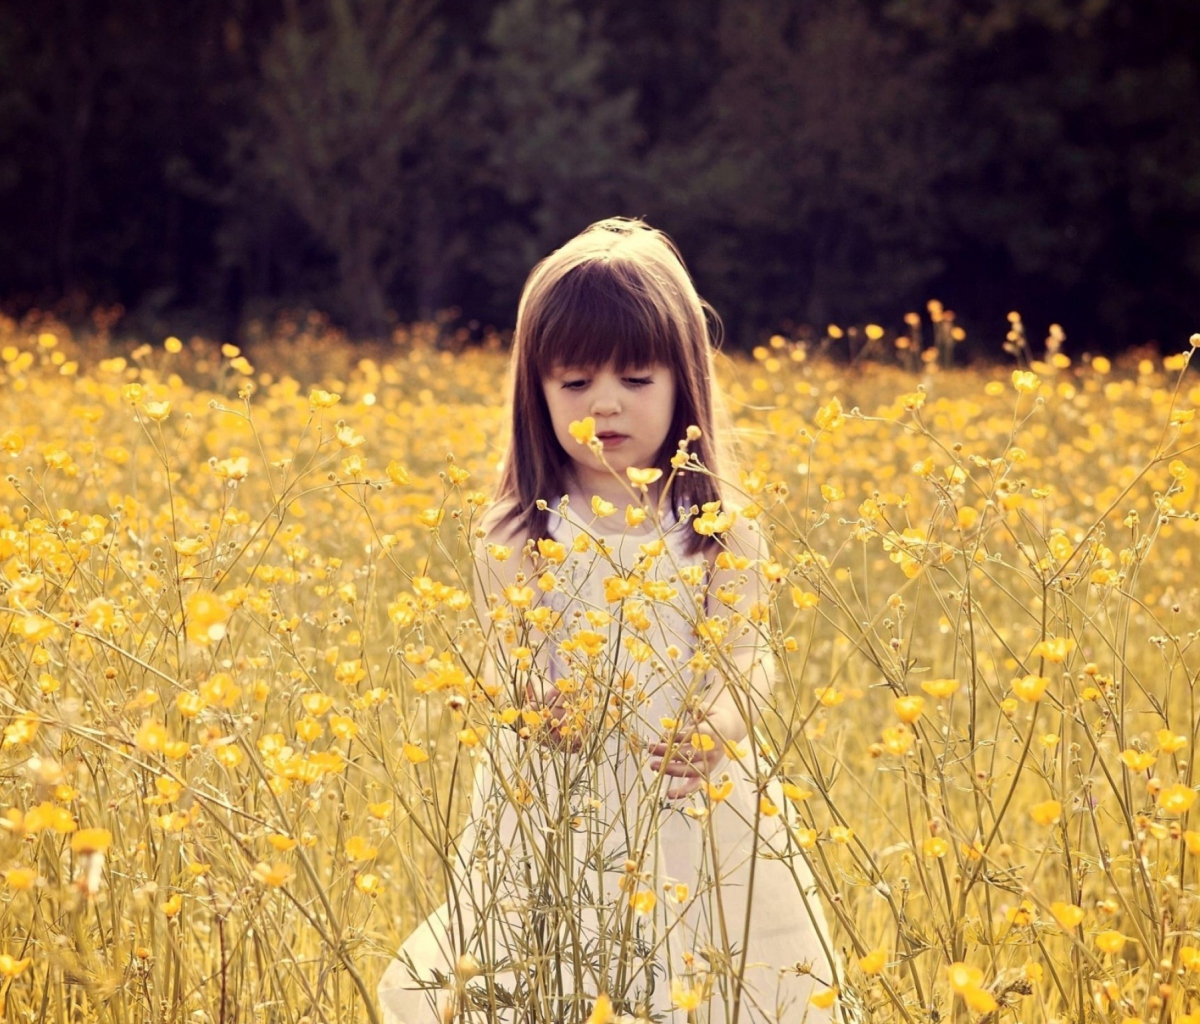 Cute Little Girl In Flower Field wallpaper 1200x1024